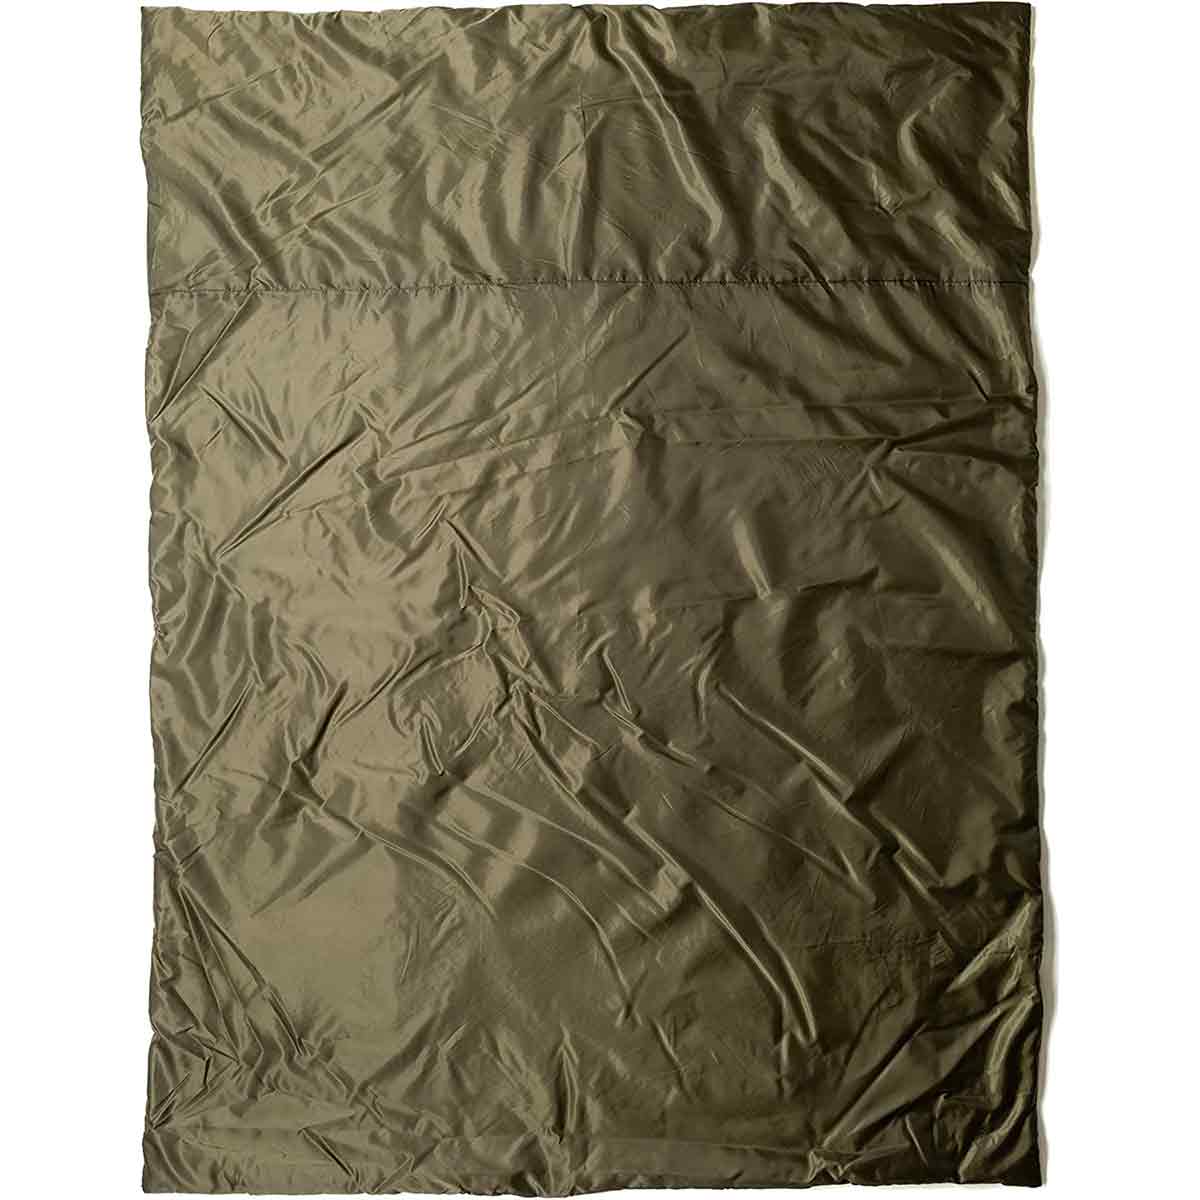 Snugpak Insulated Jungle Blanket - John Bull Clothing